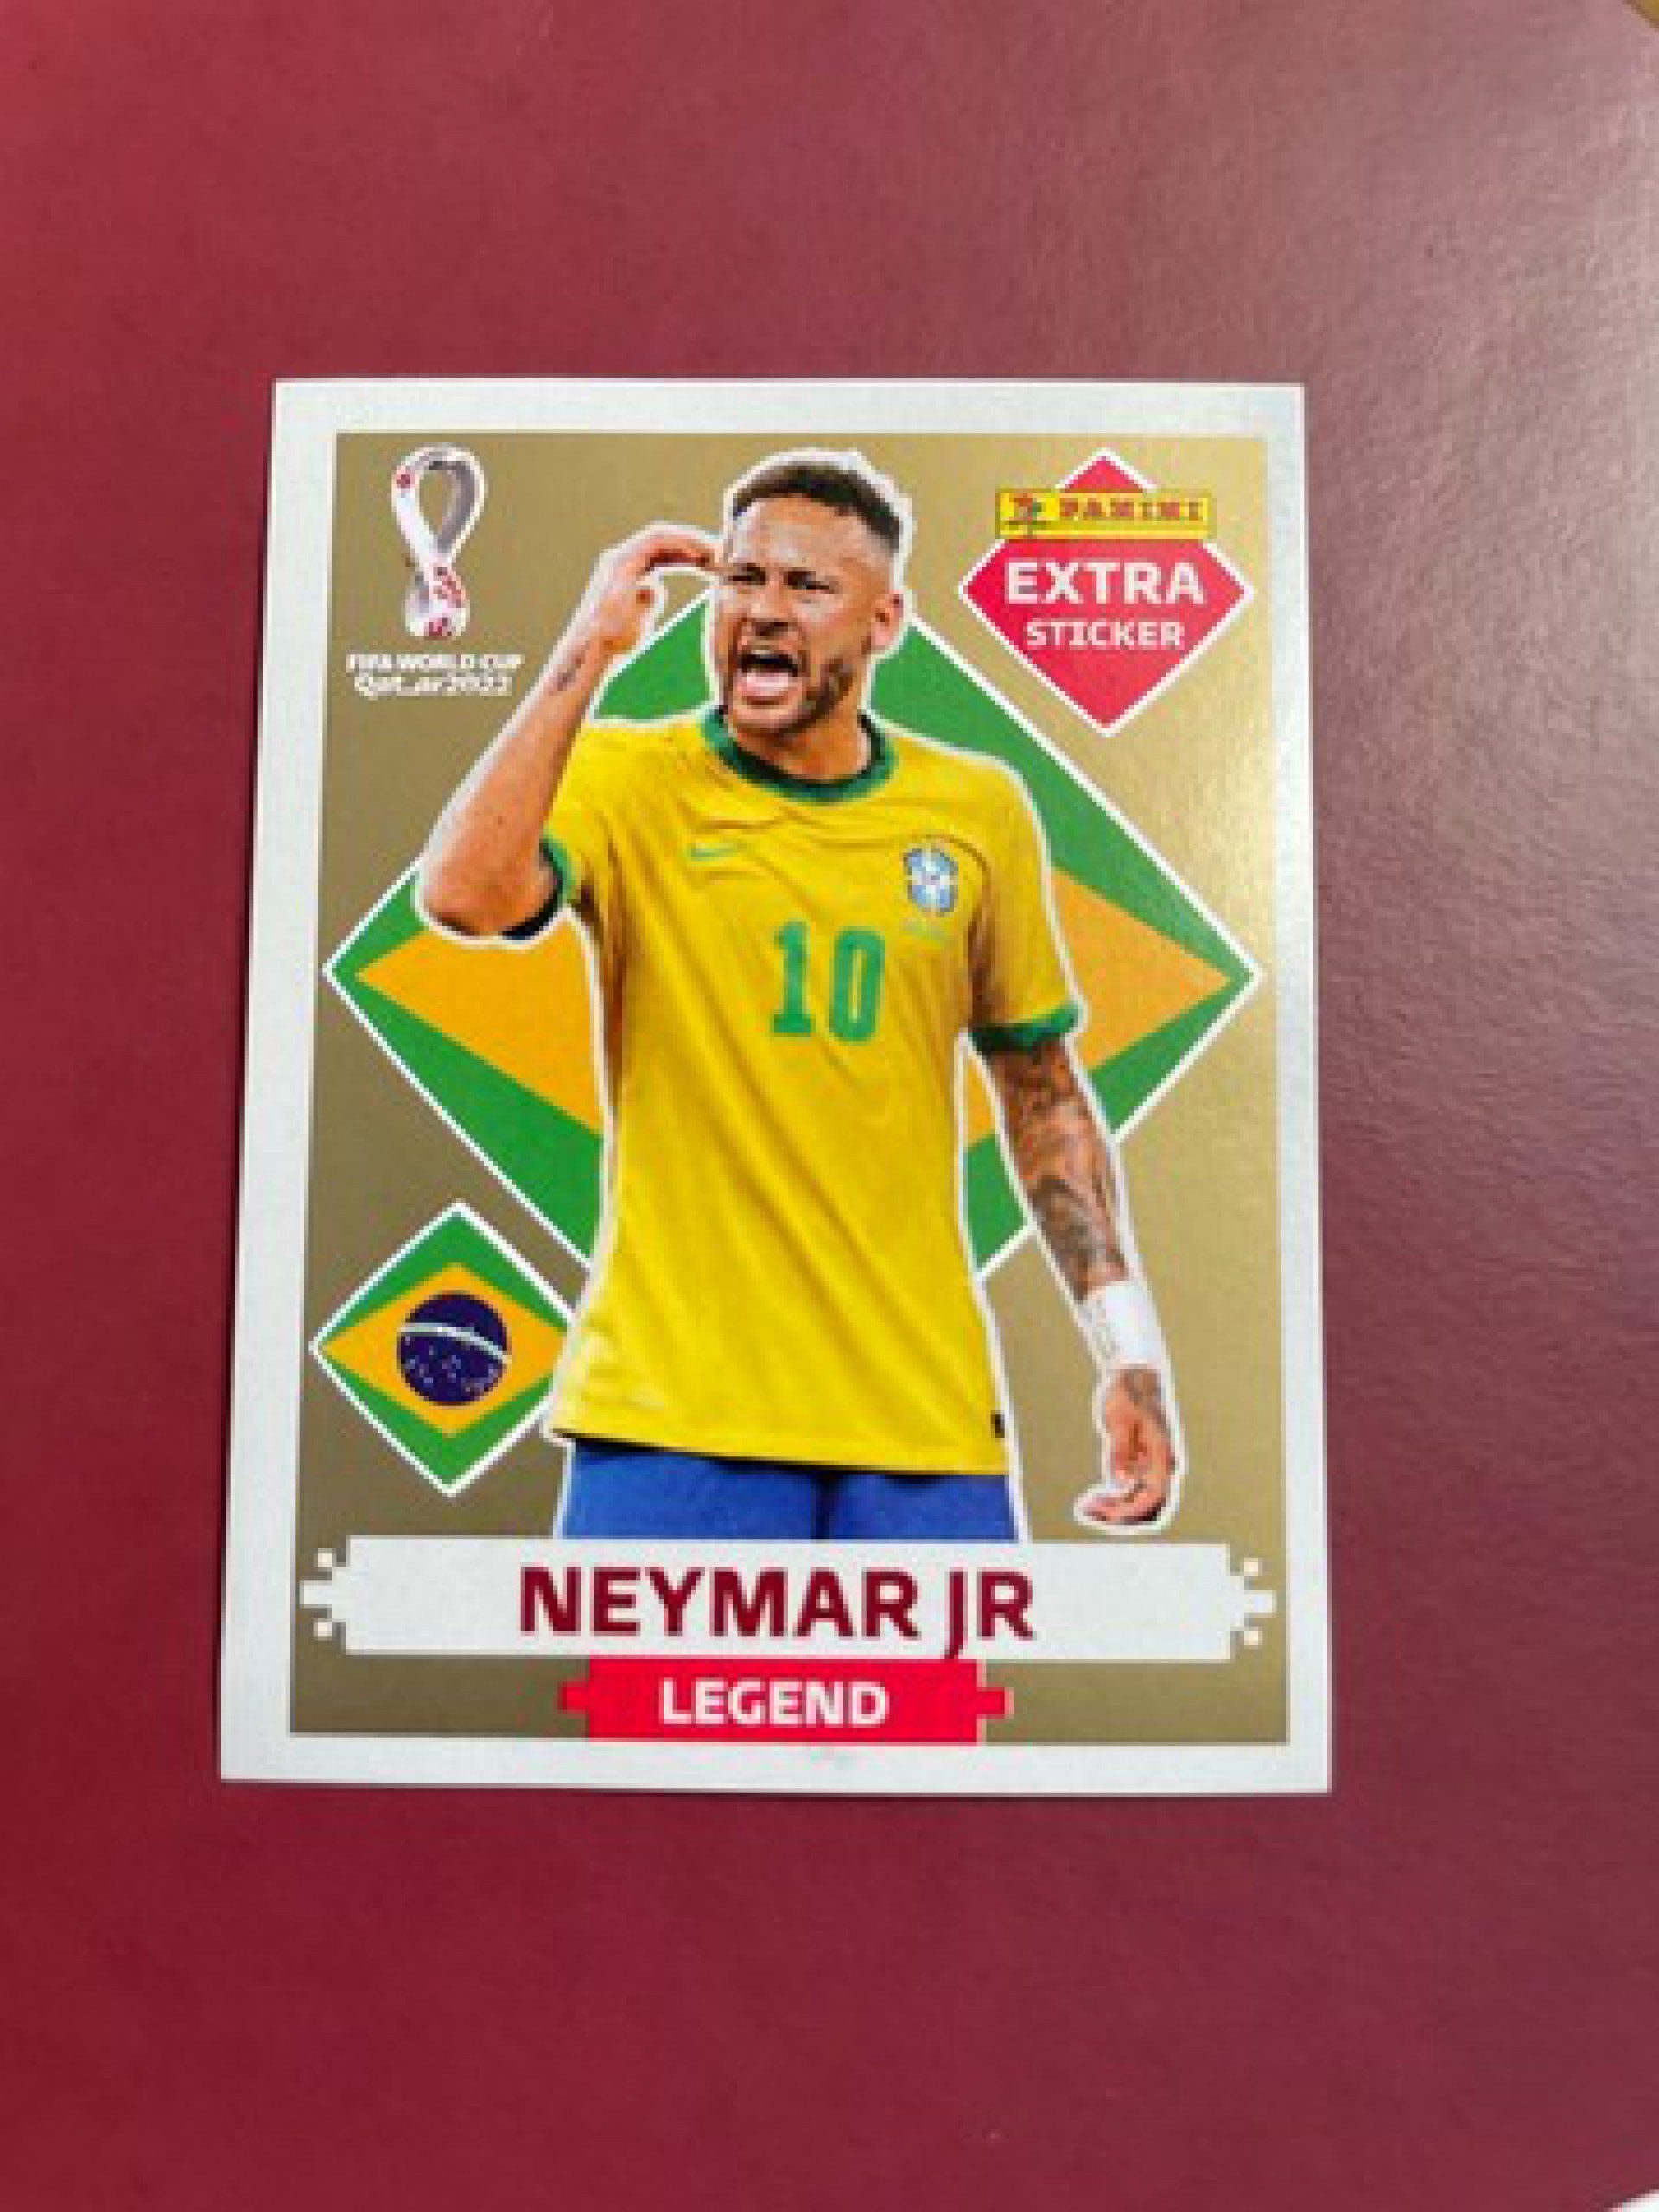 Figurinha do Neymar do álbum da Copa do Mundo do Qatar é